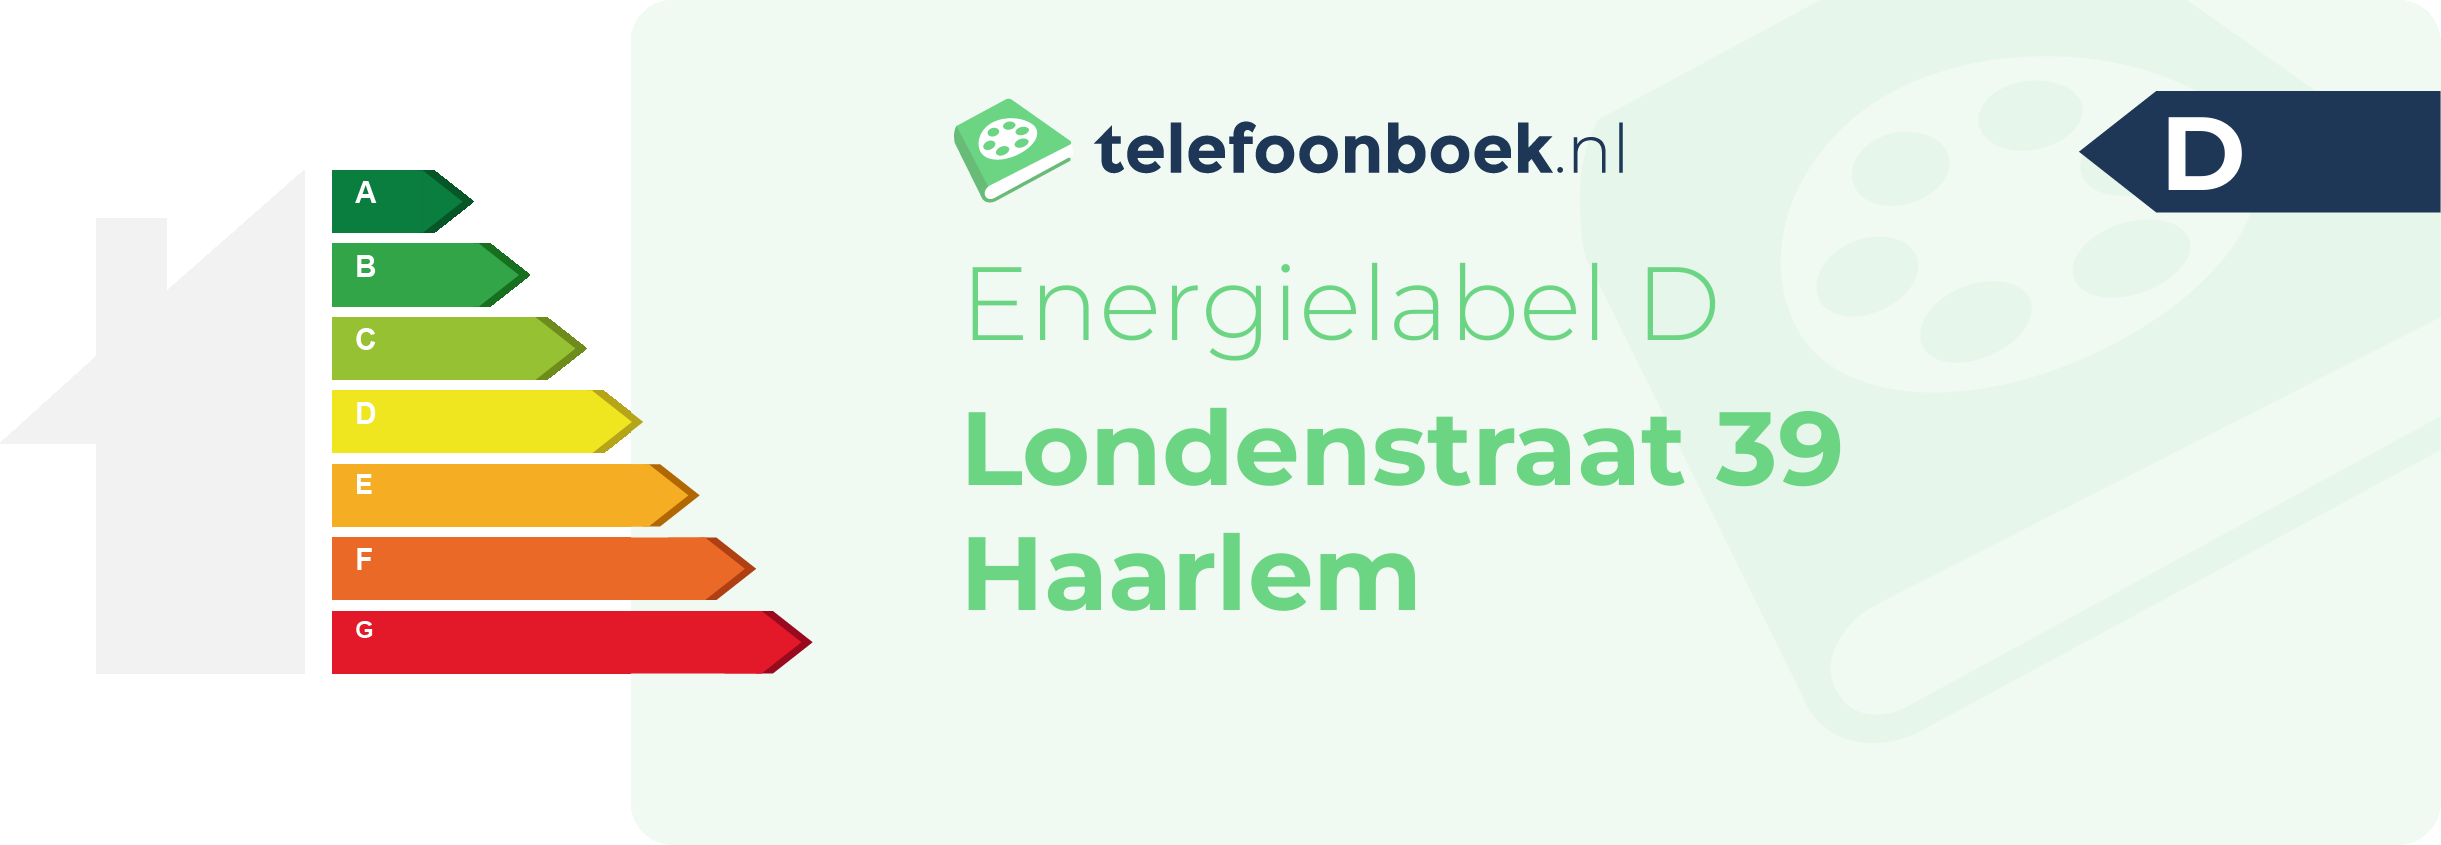 Energielabel Londenstraat 39 Haarlem